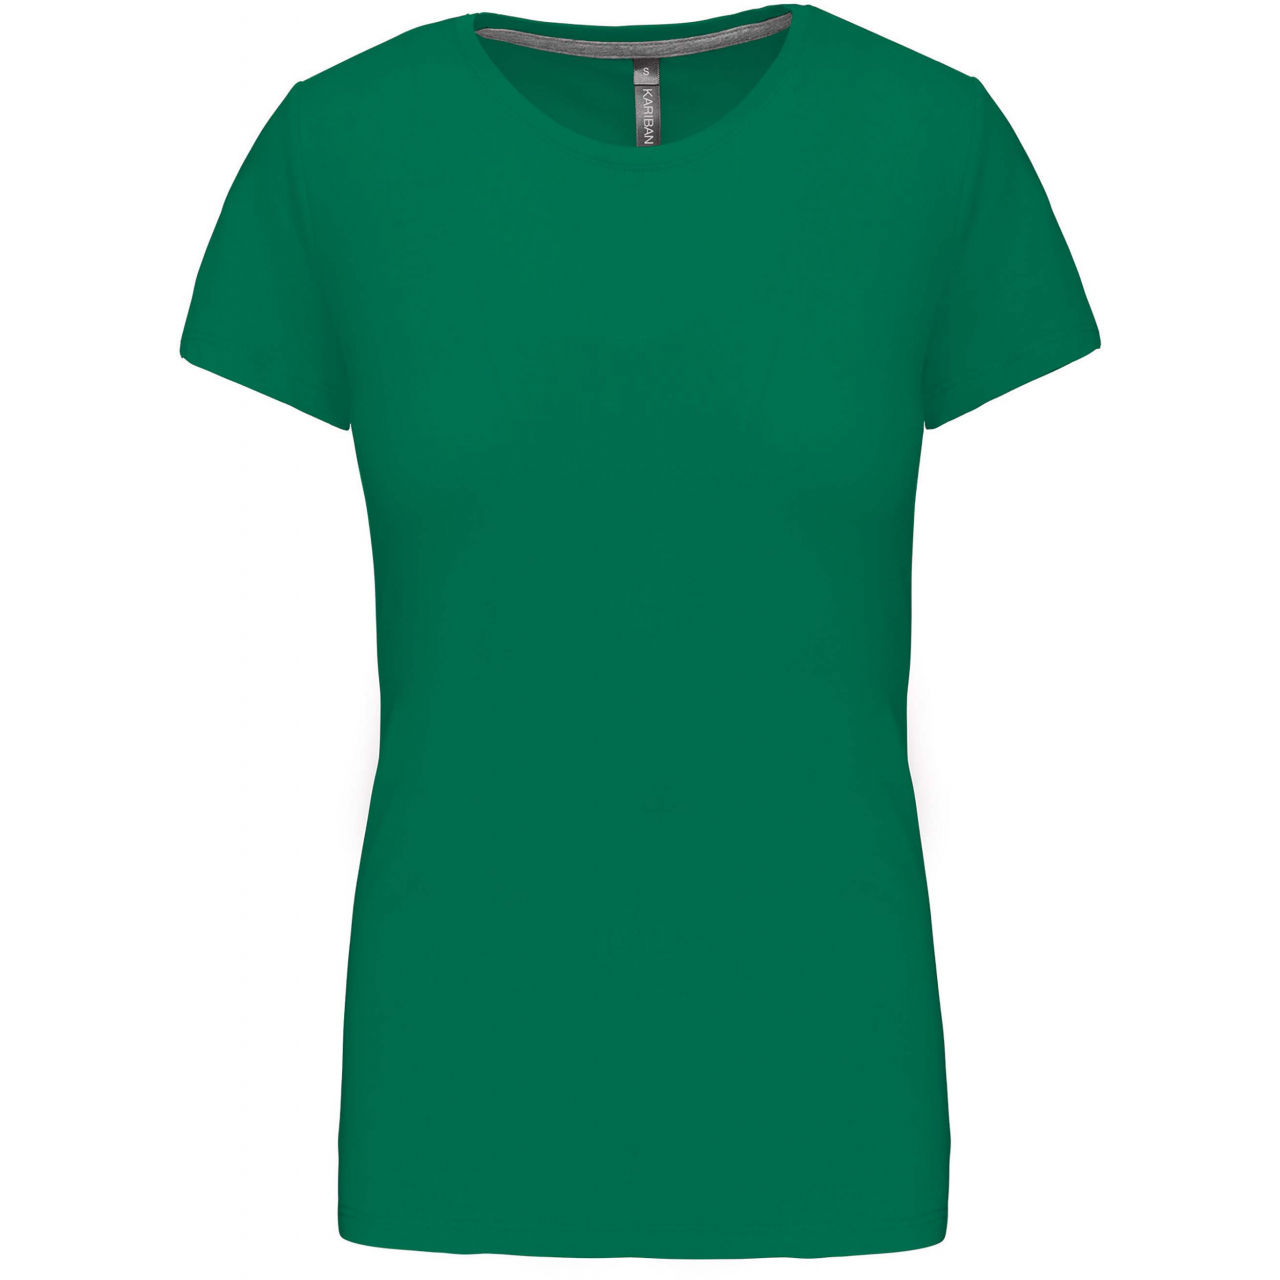 Dámské tričko Kariban s krátkým rukávem - zelené, XXL